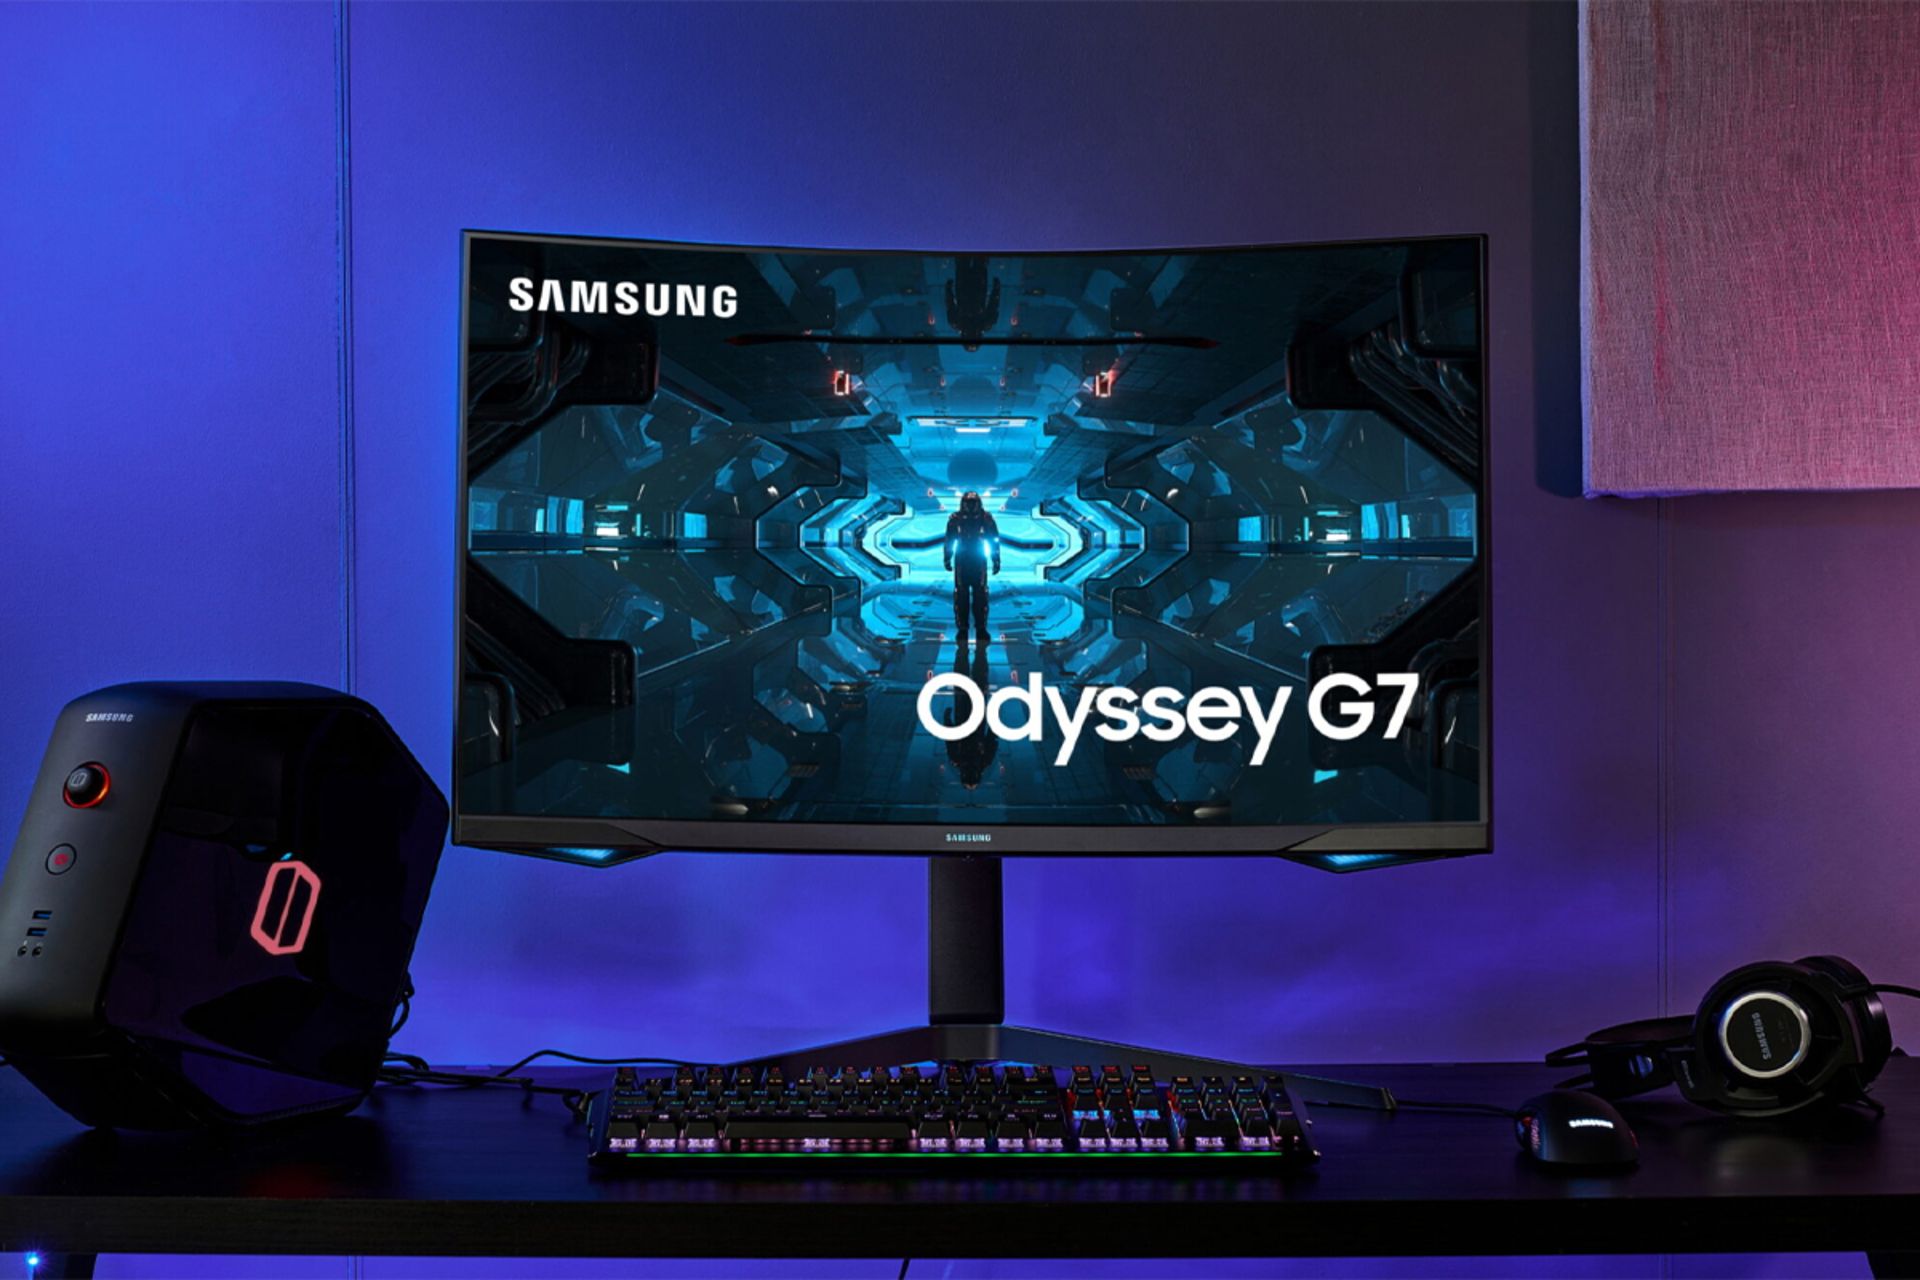 مرجع متخصصين ايران سامسونگ اوديسي جي 7 / Samsung Odyssey G7